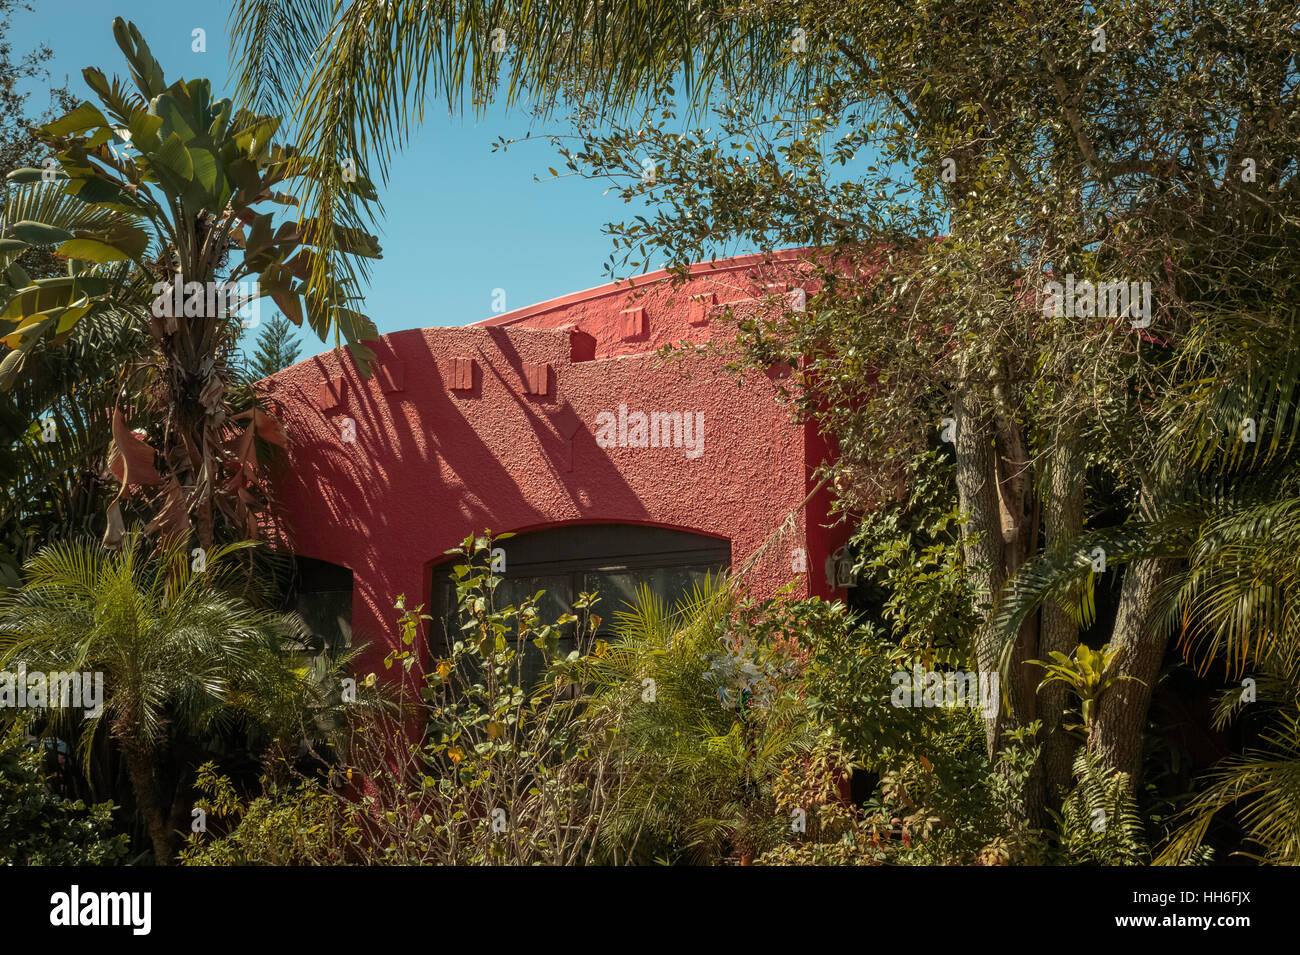 Près de la résidence de la vue obstruée par d'épais feuillage tropical Banque D'Images